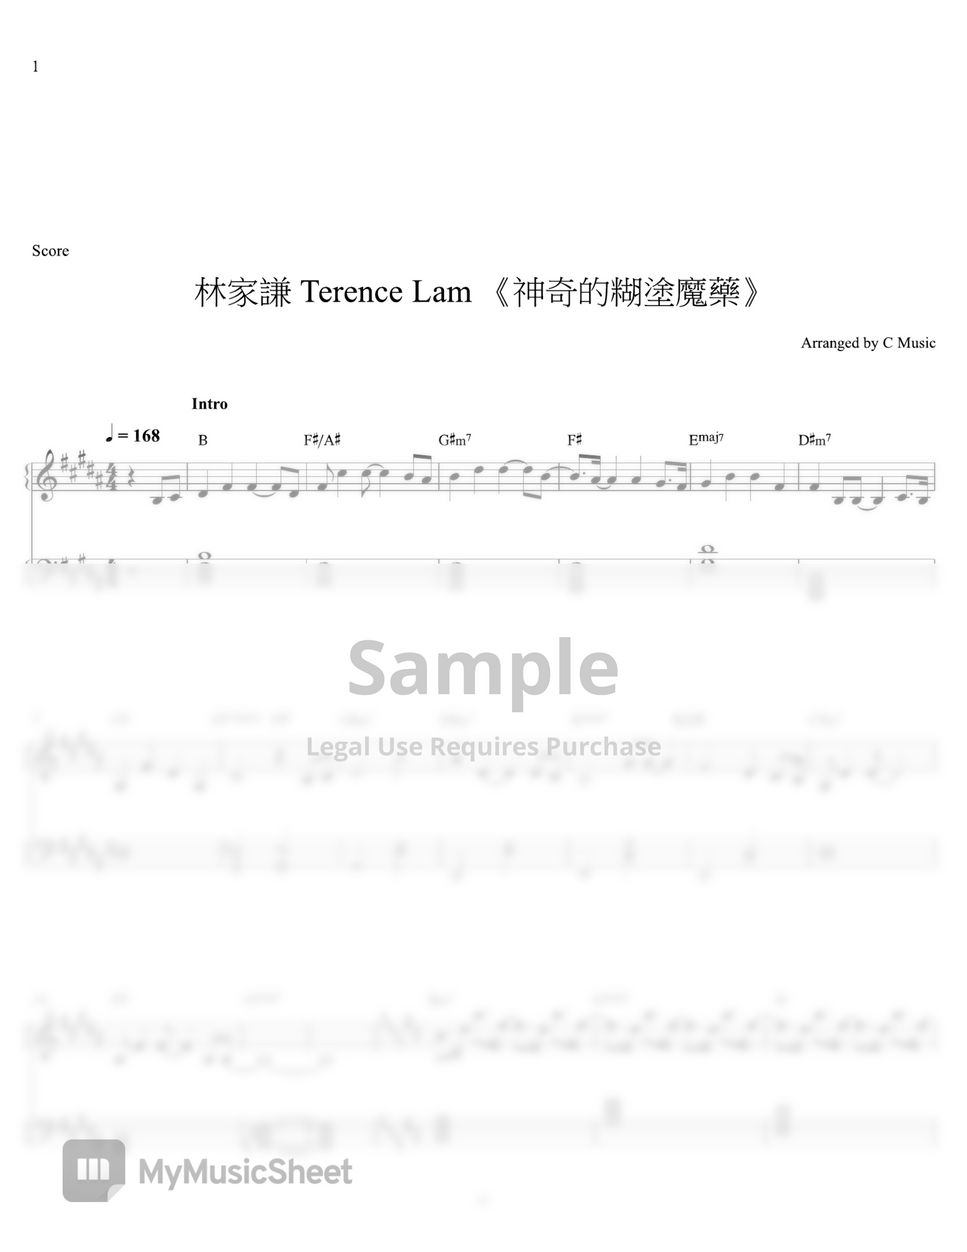 林家謙 Terence Lam - 神奇的糊塗魔藥 by C Music